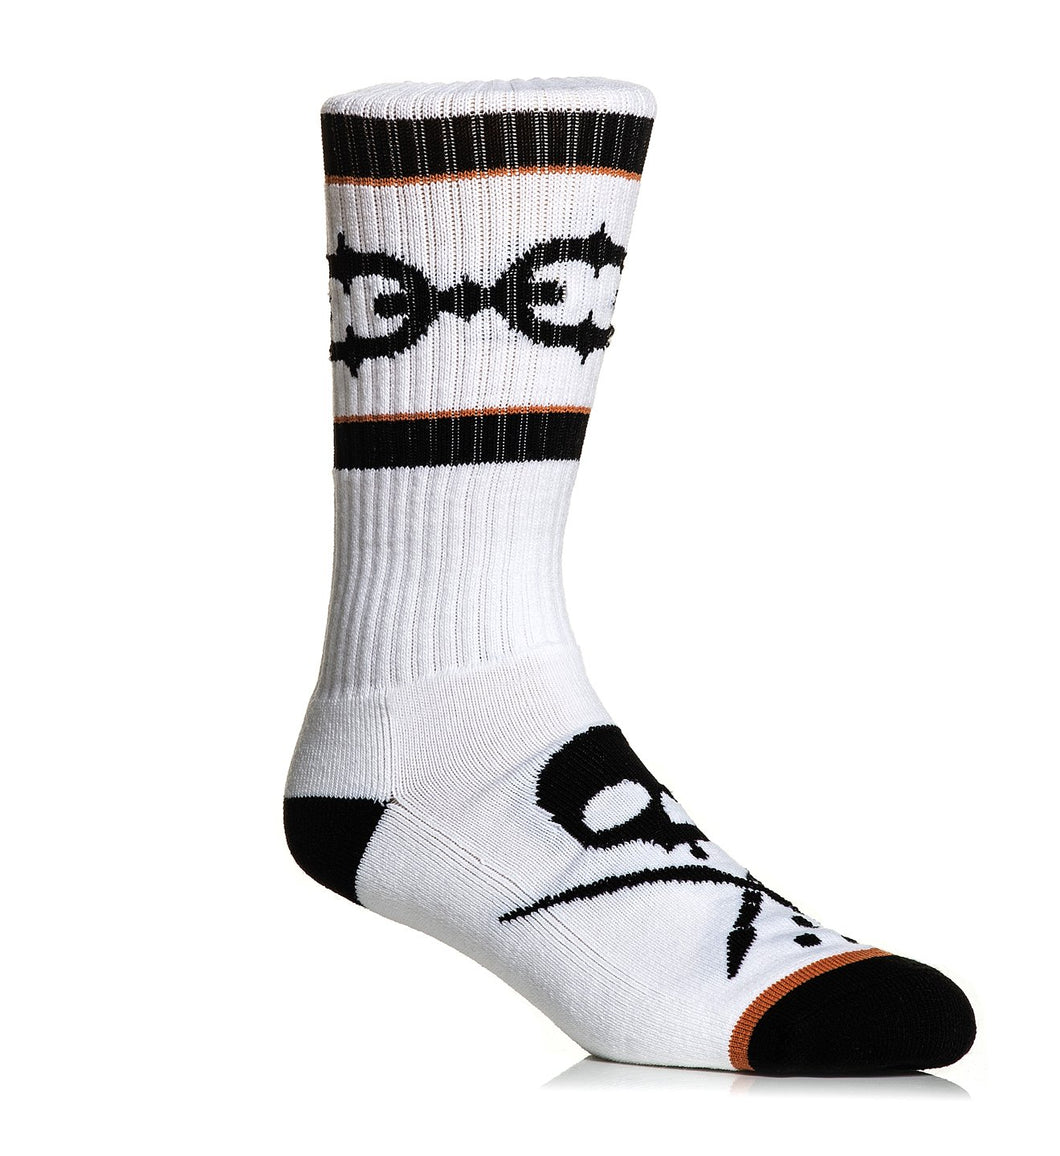 white high socks with black skull